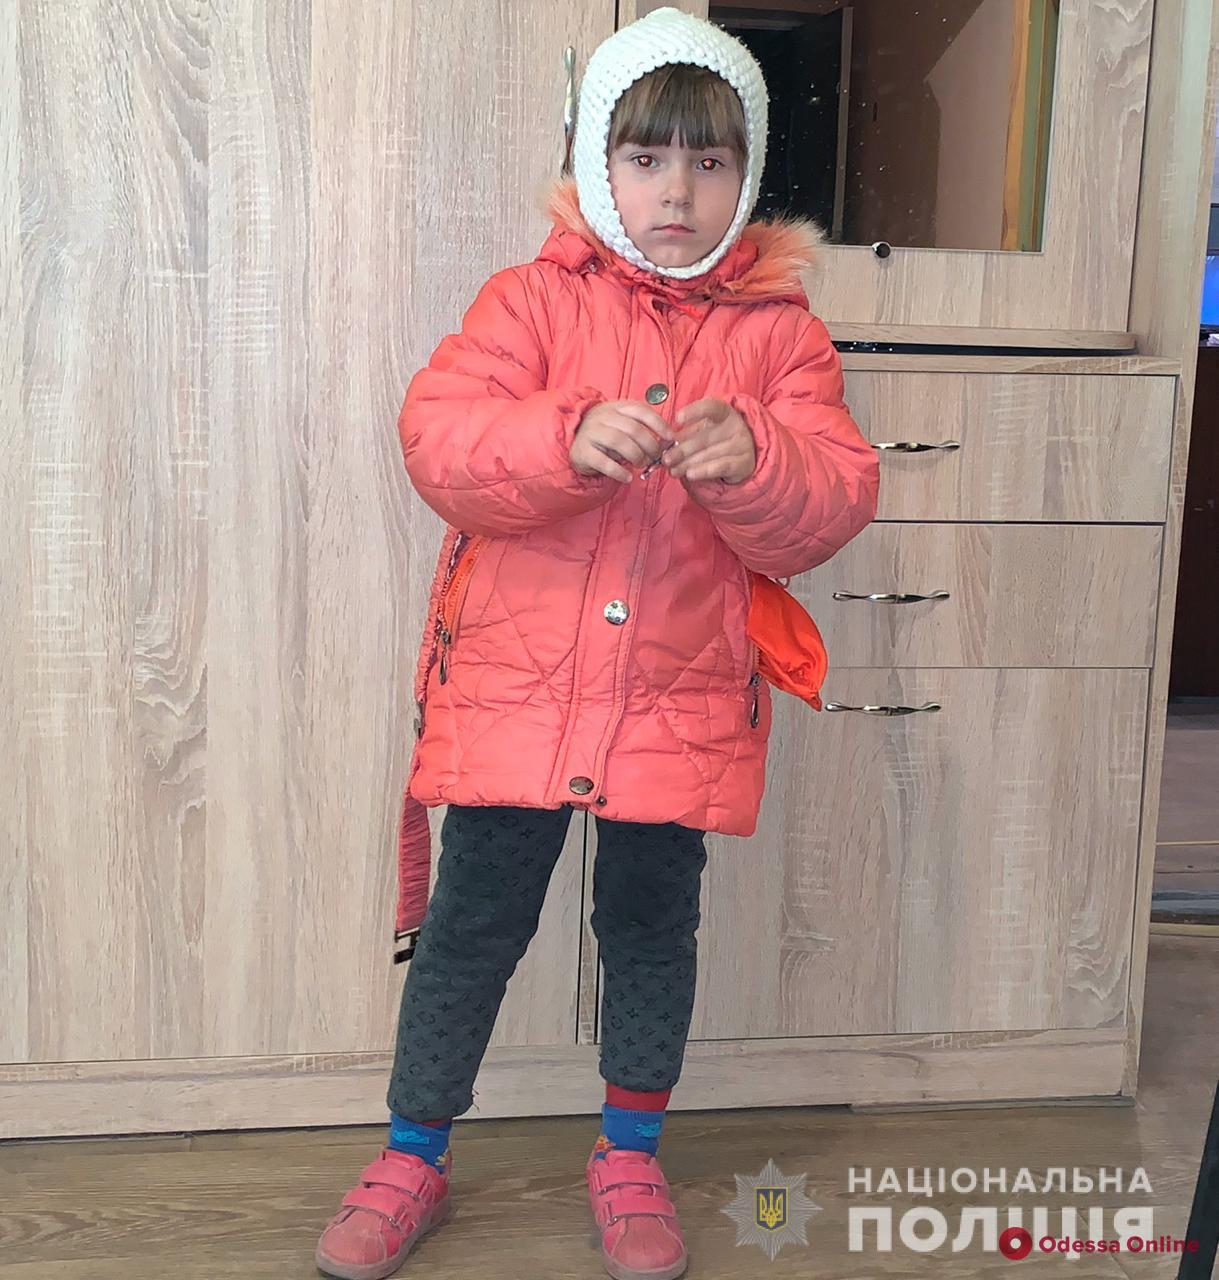 В Одессе полицейские разыскивают родителей потерявшейся девочки (обновлено)